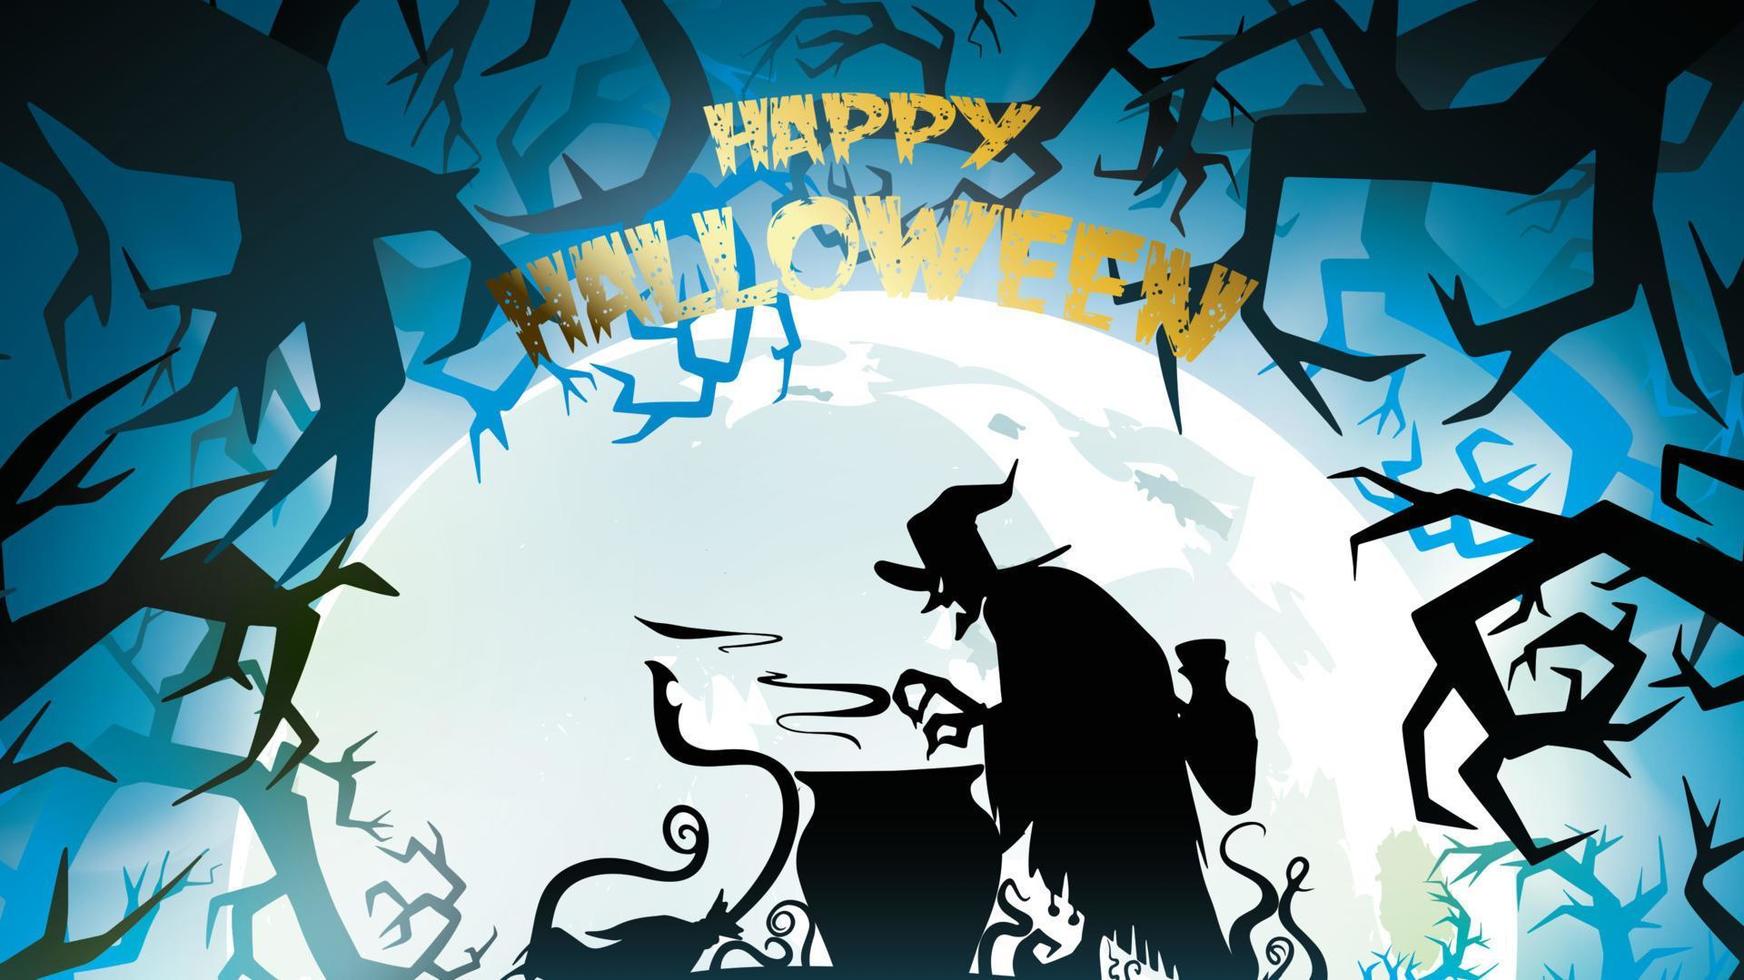 spöklik nattbakgrund med fullmåne, läskiga träd och skogssilhuetter. halloween banner med kopia utrymme för hälsningar, för text promo eller inbjudan till en fest. vektor illustration